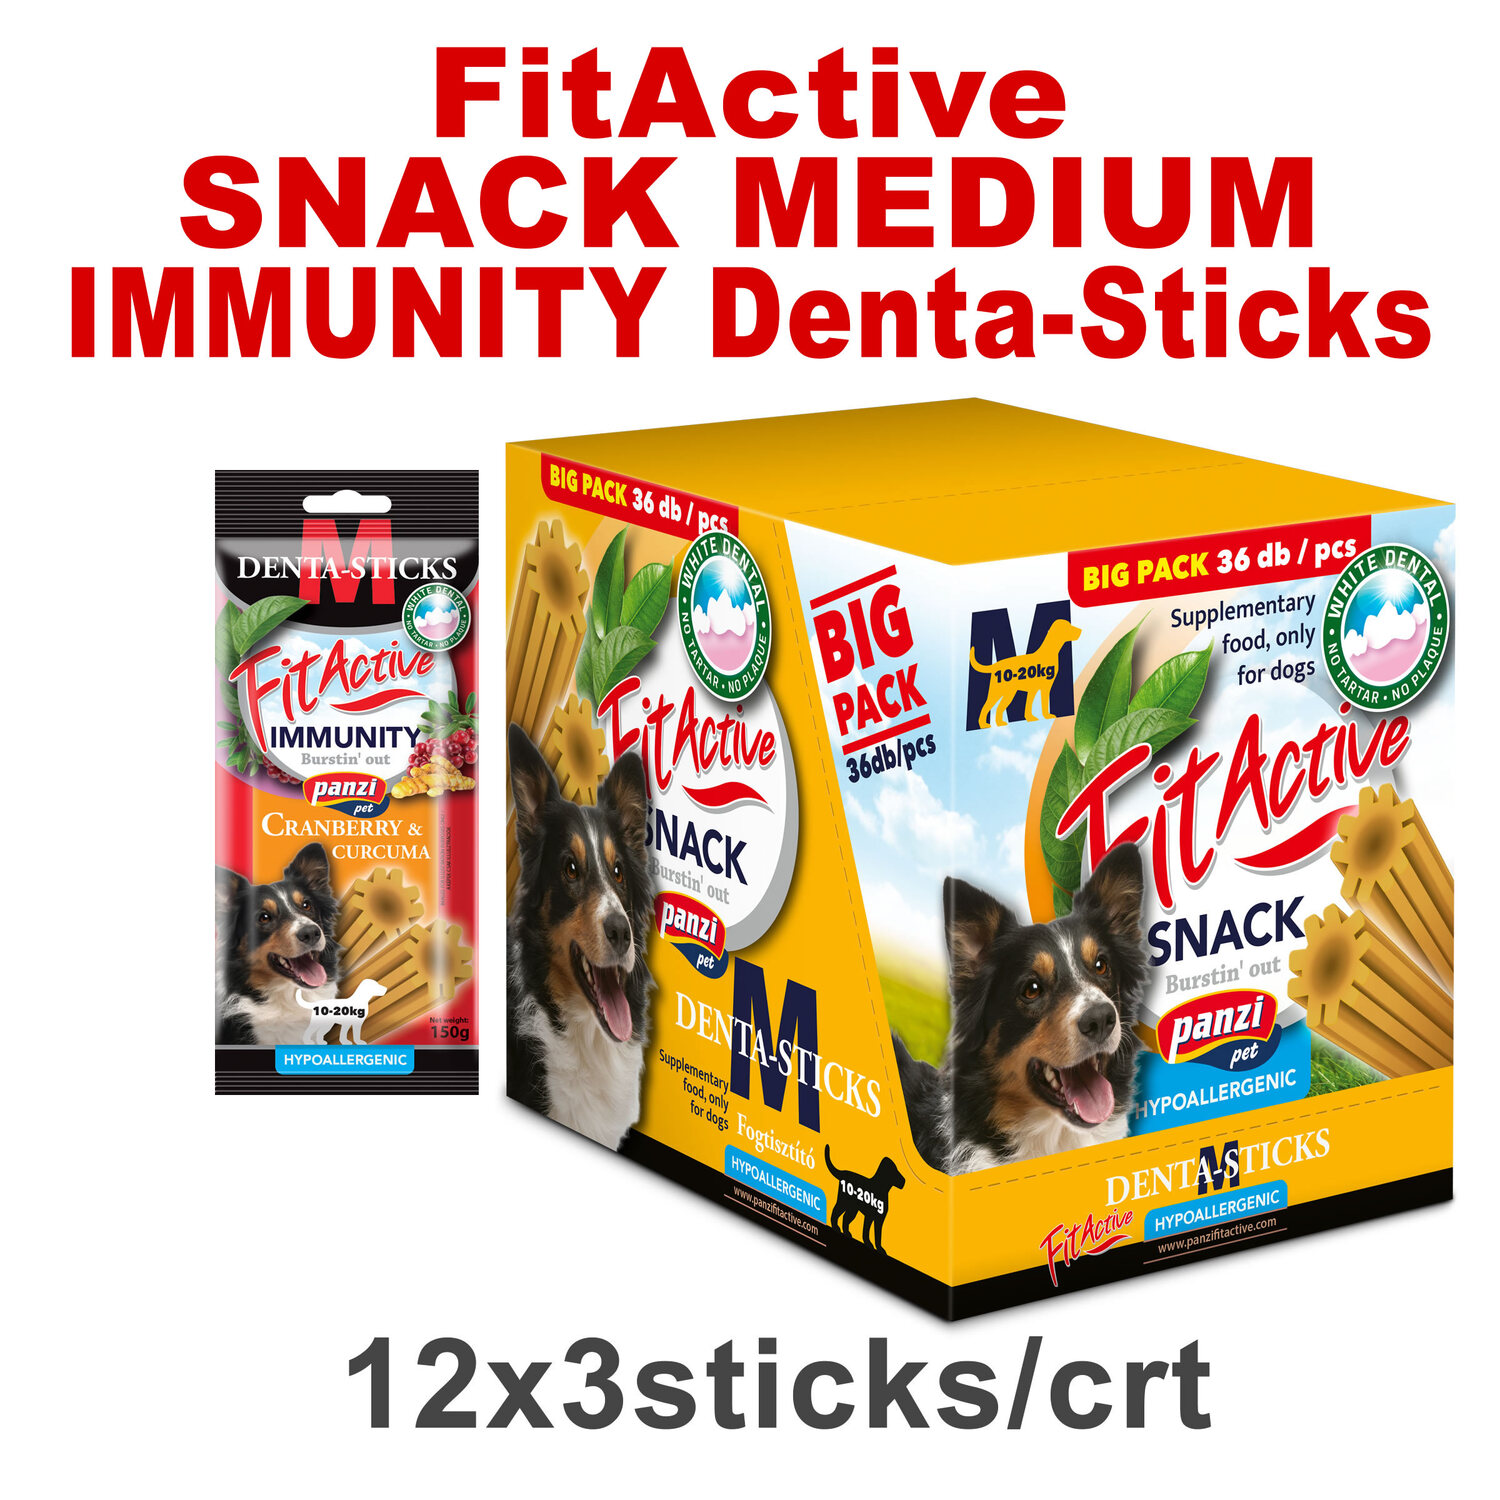 FitActive Hypoallergenic Denta-Sticks Immunity Cranberry & Curcuma - Batoane pentru întărirea sistemului imunitar și pentru curățarea dinților pentru câini - zoom